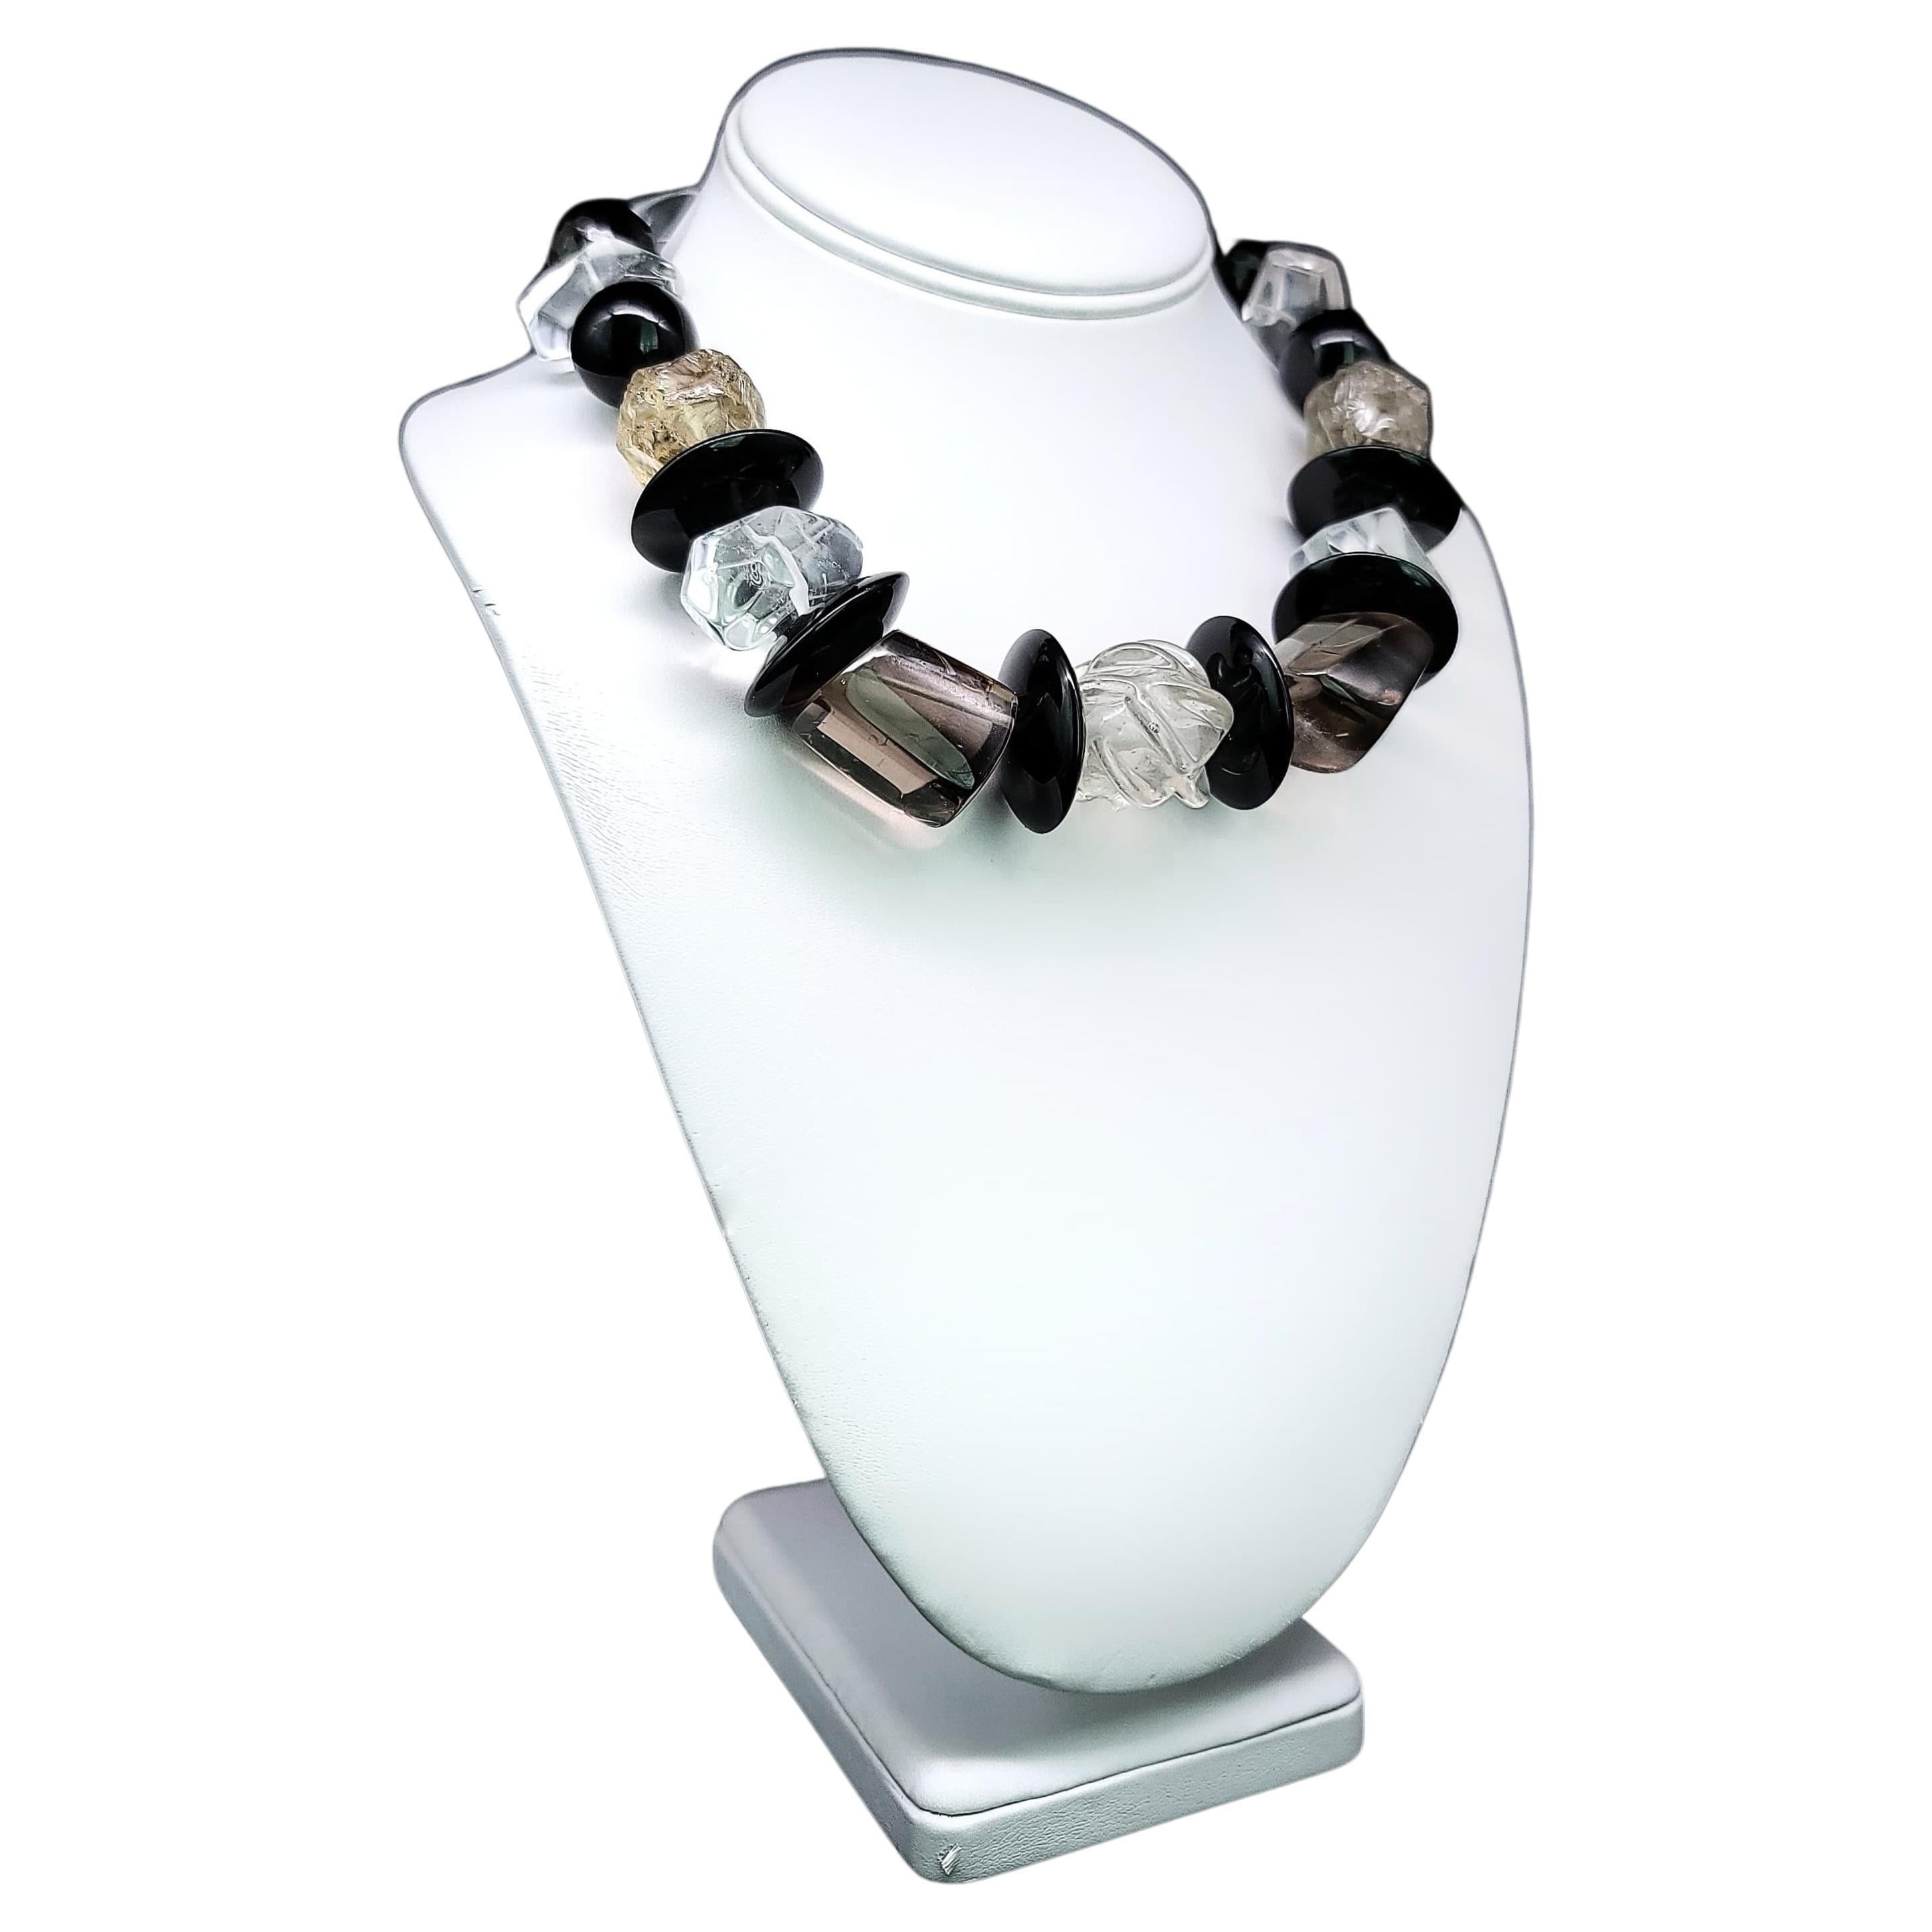 Einzigartiges und fesselndes Collier:

Diese bemerkenswerte Halskette ist eine einzigartige Kreation, die in allen Facetten Kühnheit und Schönheit ausstrahlt. Die auffällige Kombination aus sorgfältig ausgewählten Kristall-, Rauchquarz- und